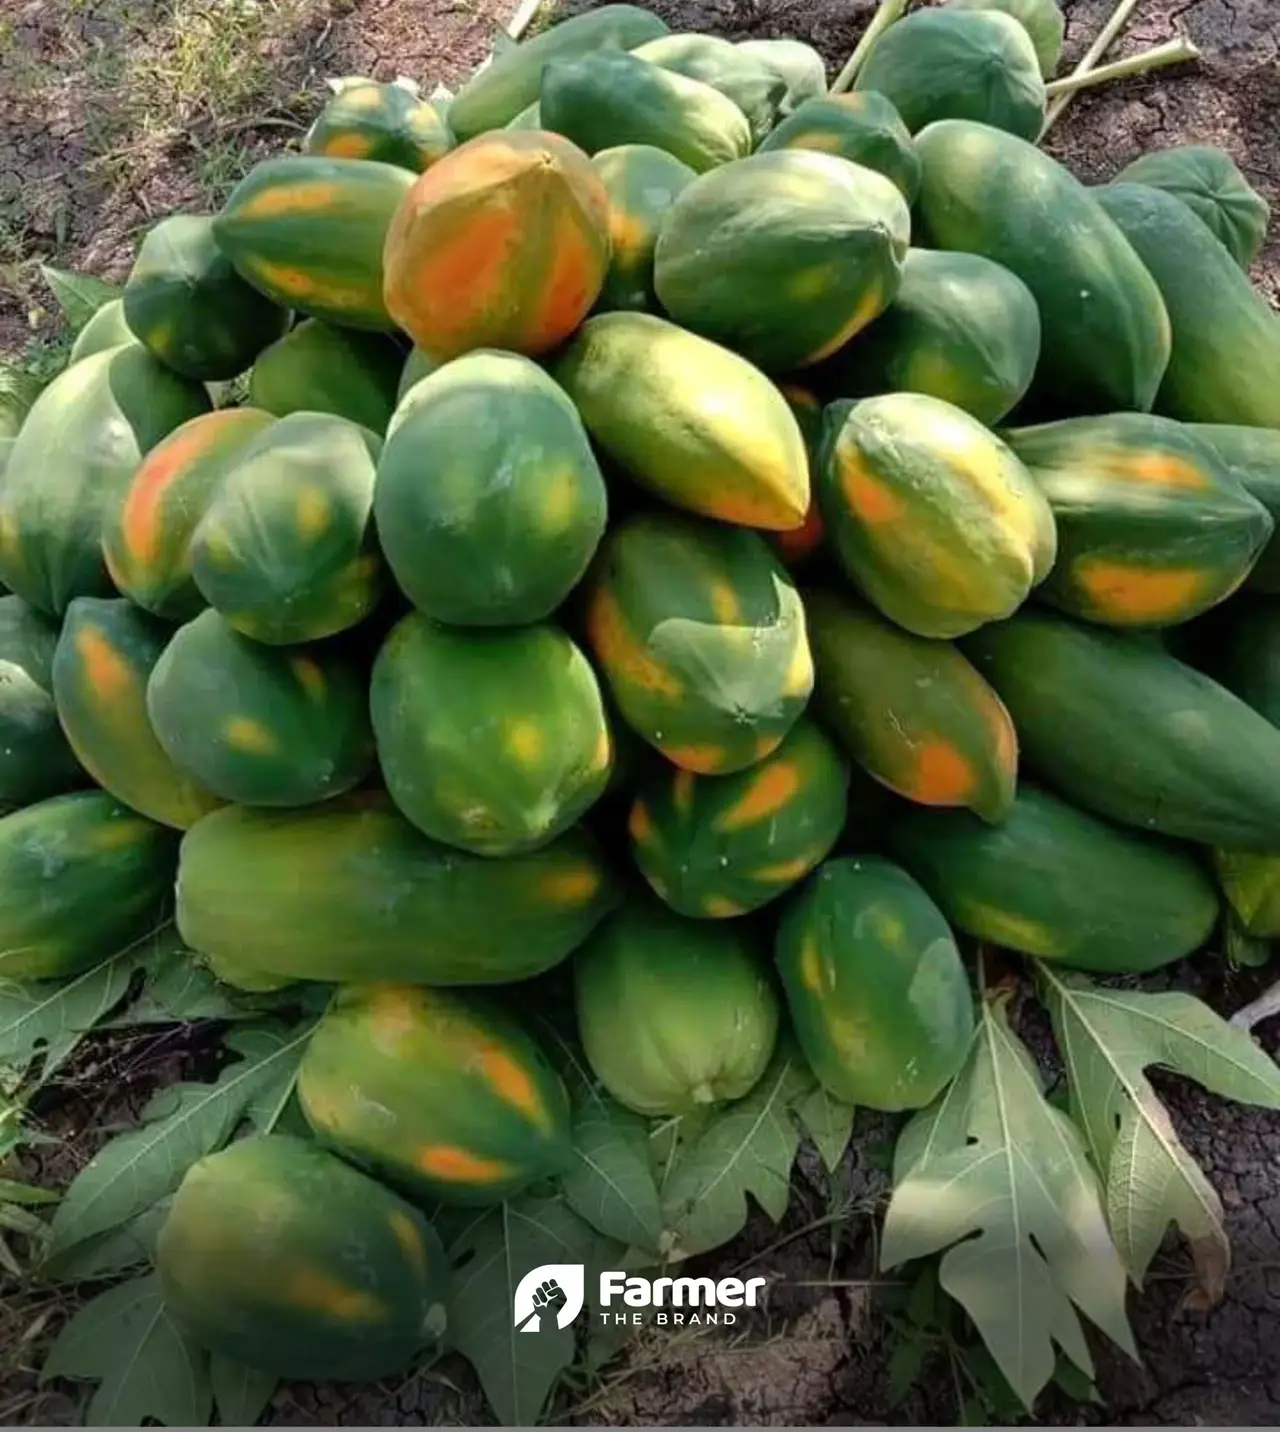 Harvested papayas